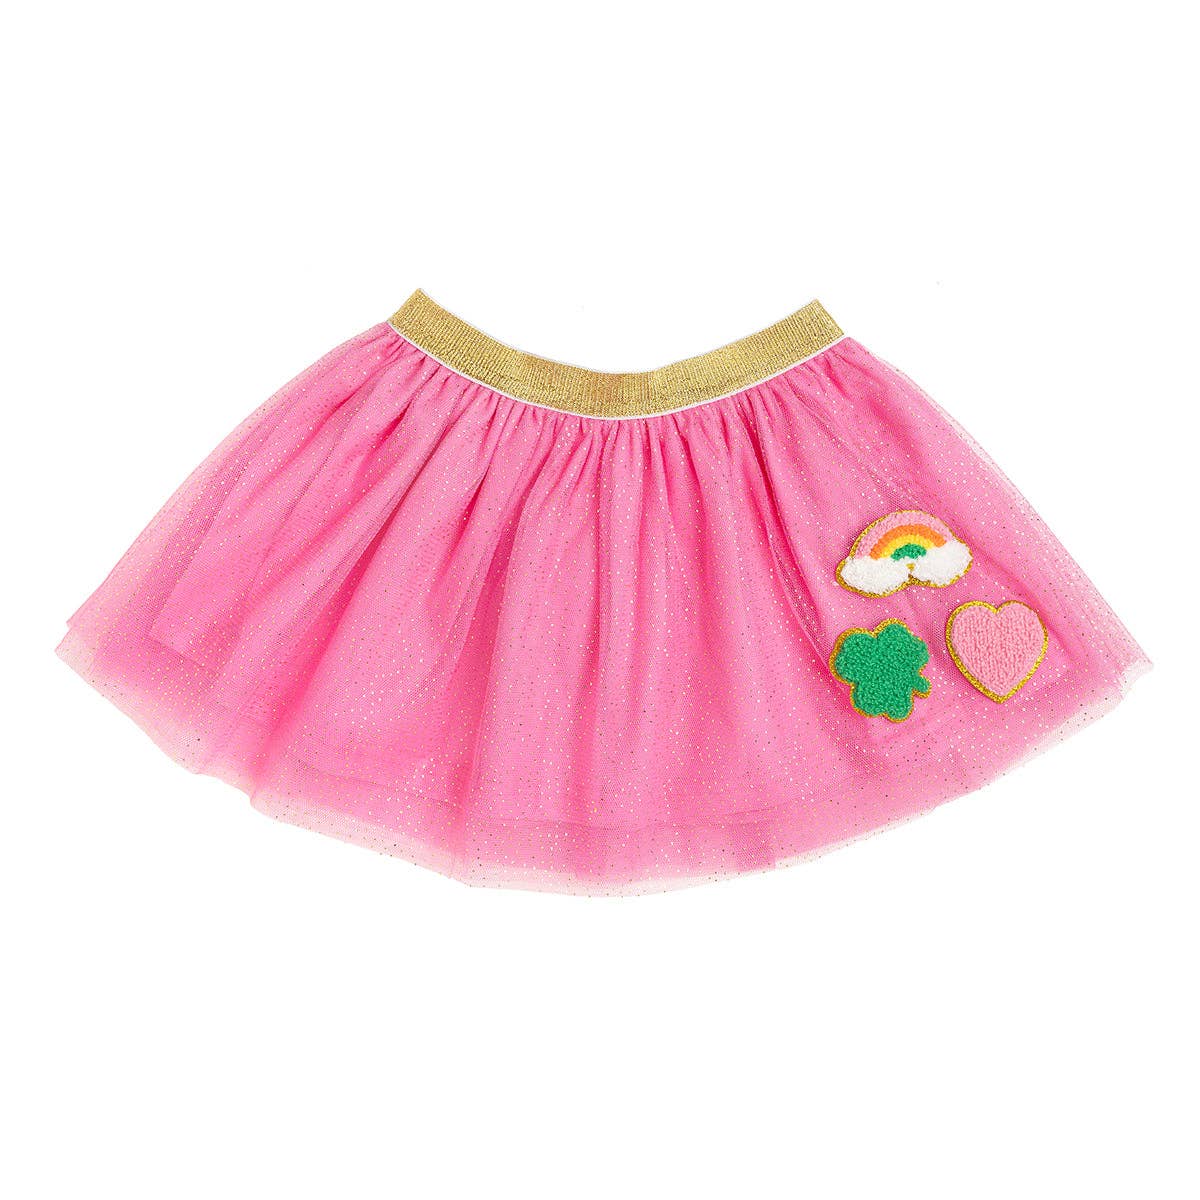 Sweet Wink - Lucky Patch St. Patrick's Day Tutu - Kids Dress Up Skirt